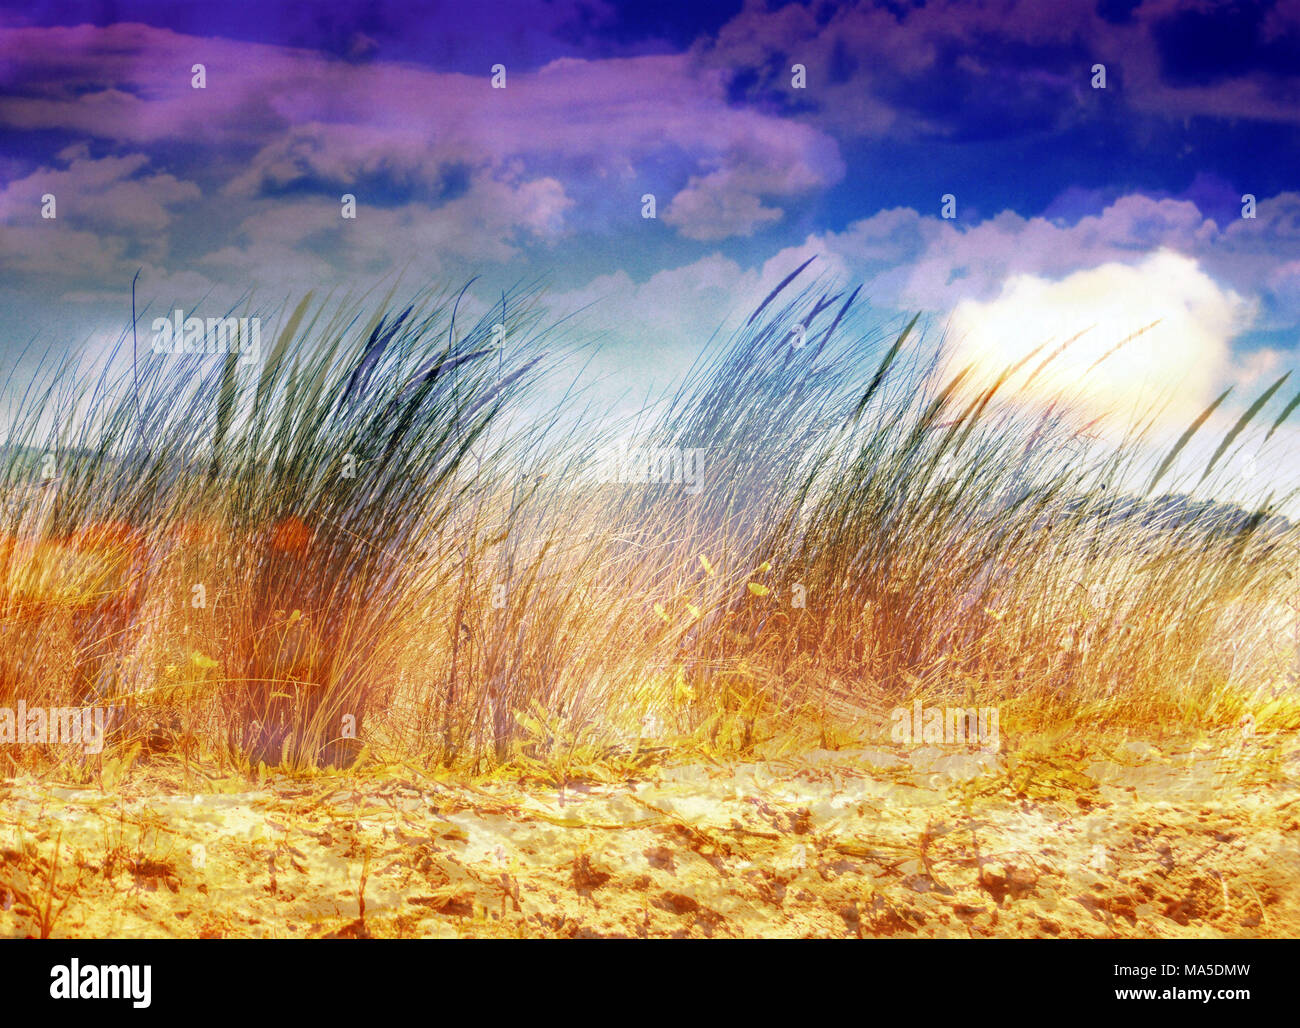 photomontage, dunes, grasses, Stock Photo